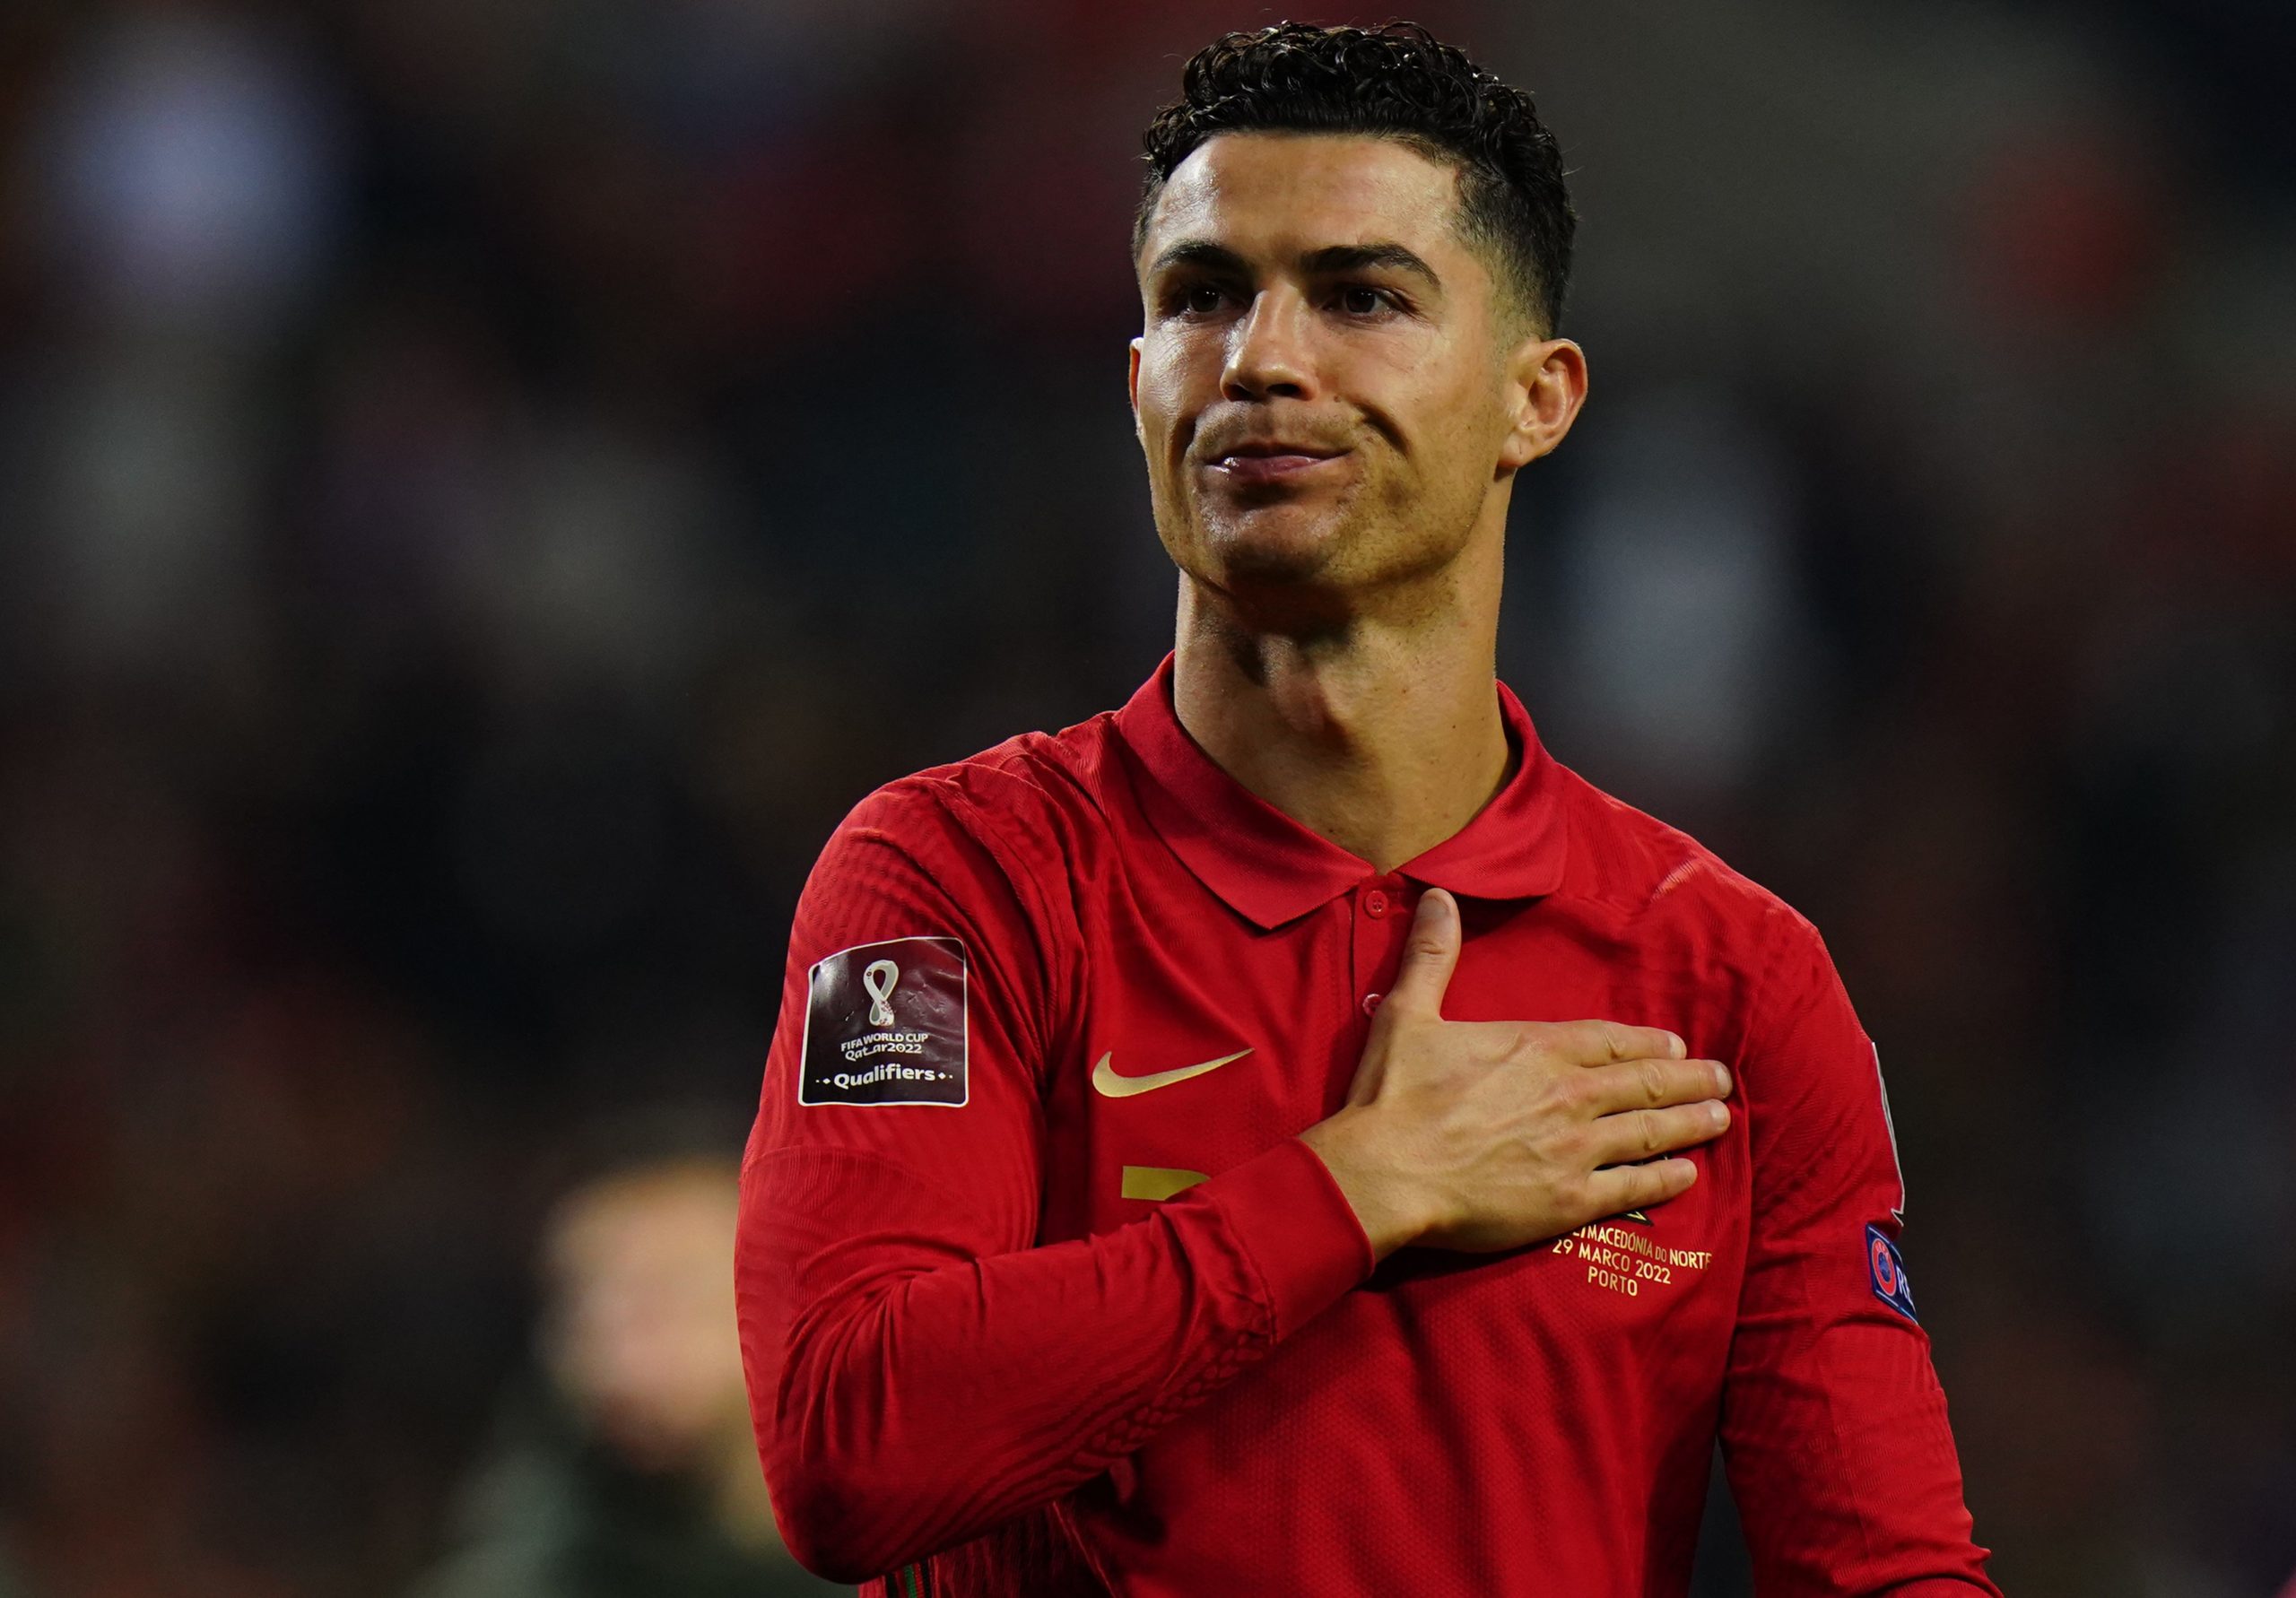 Decisão tomada: Cristiano Ronaldo não desiste da Seleção